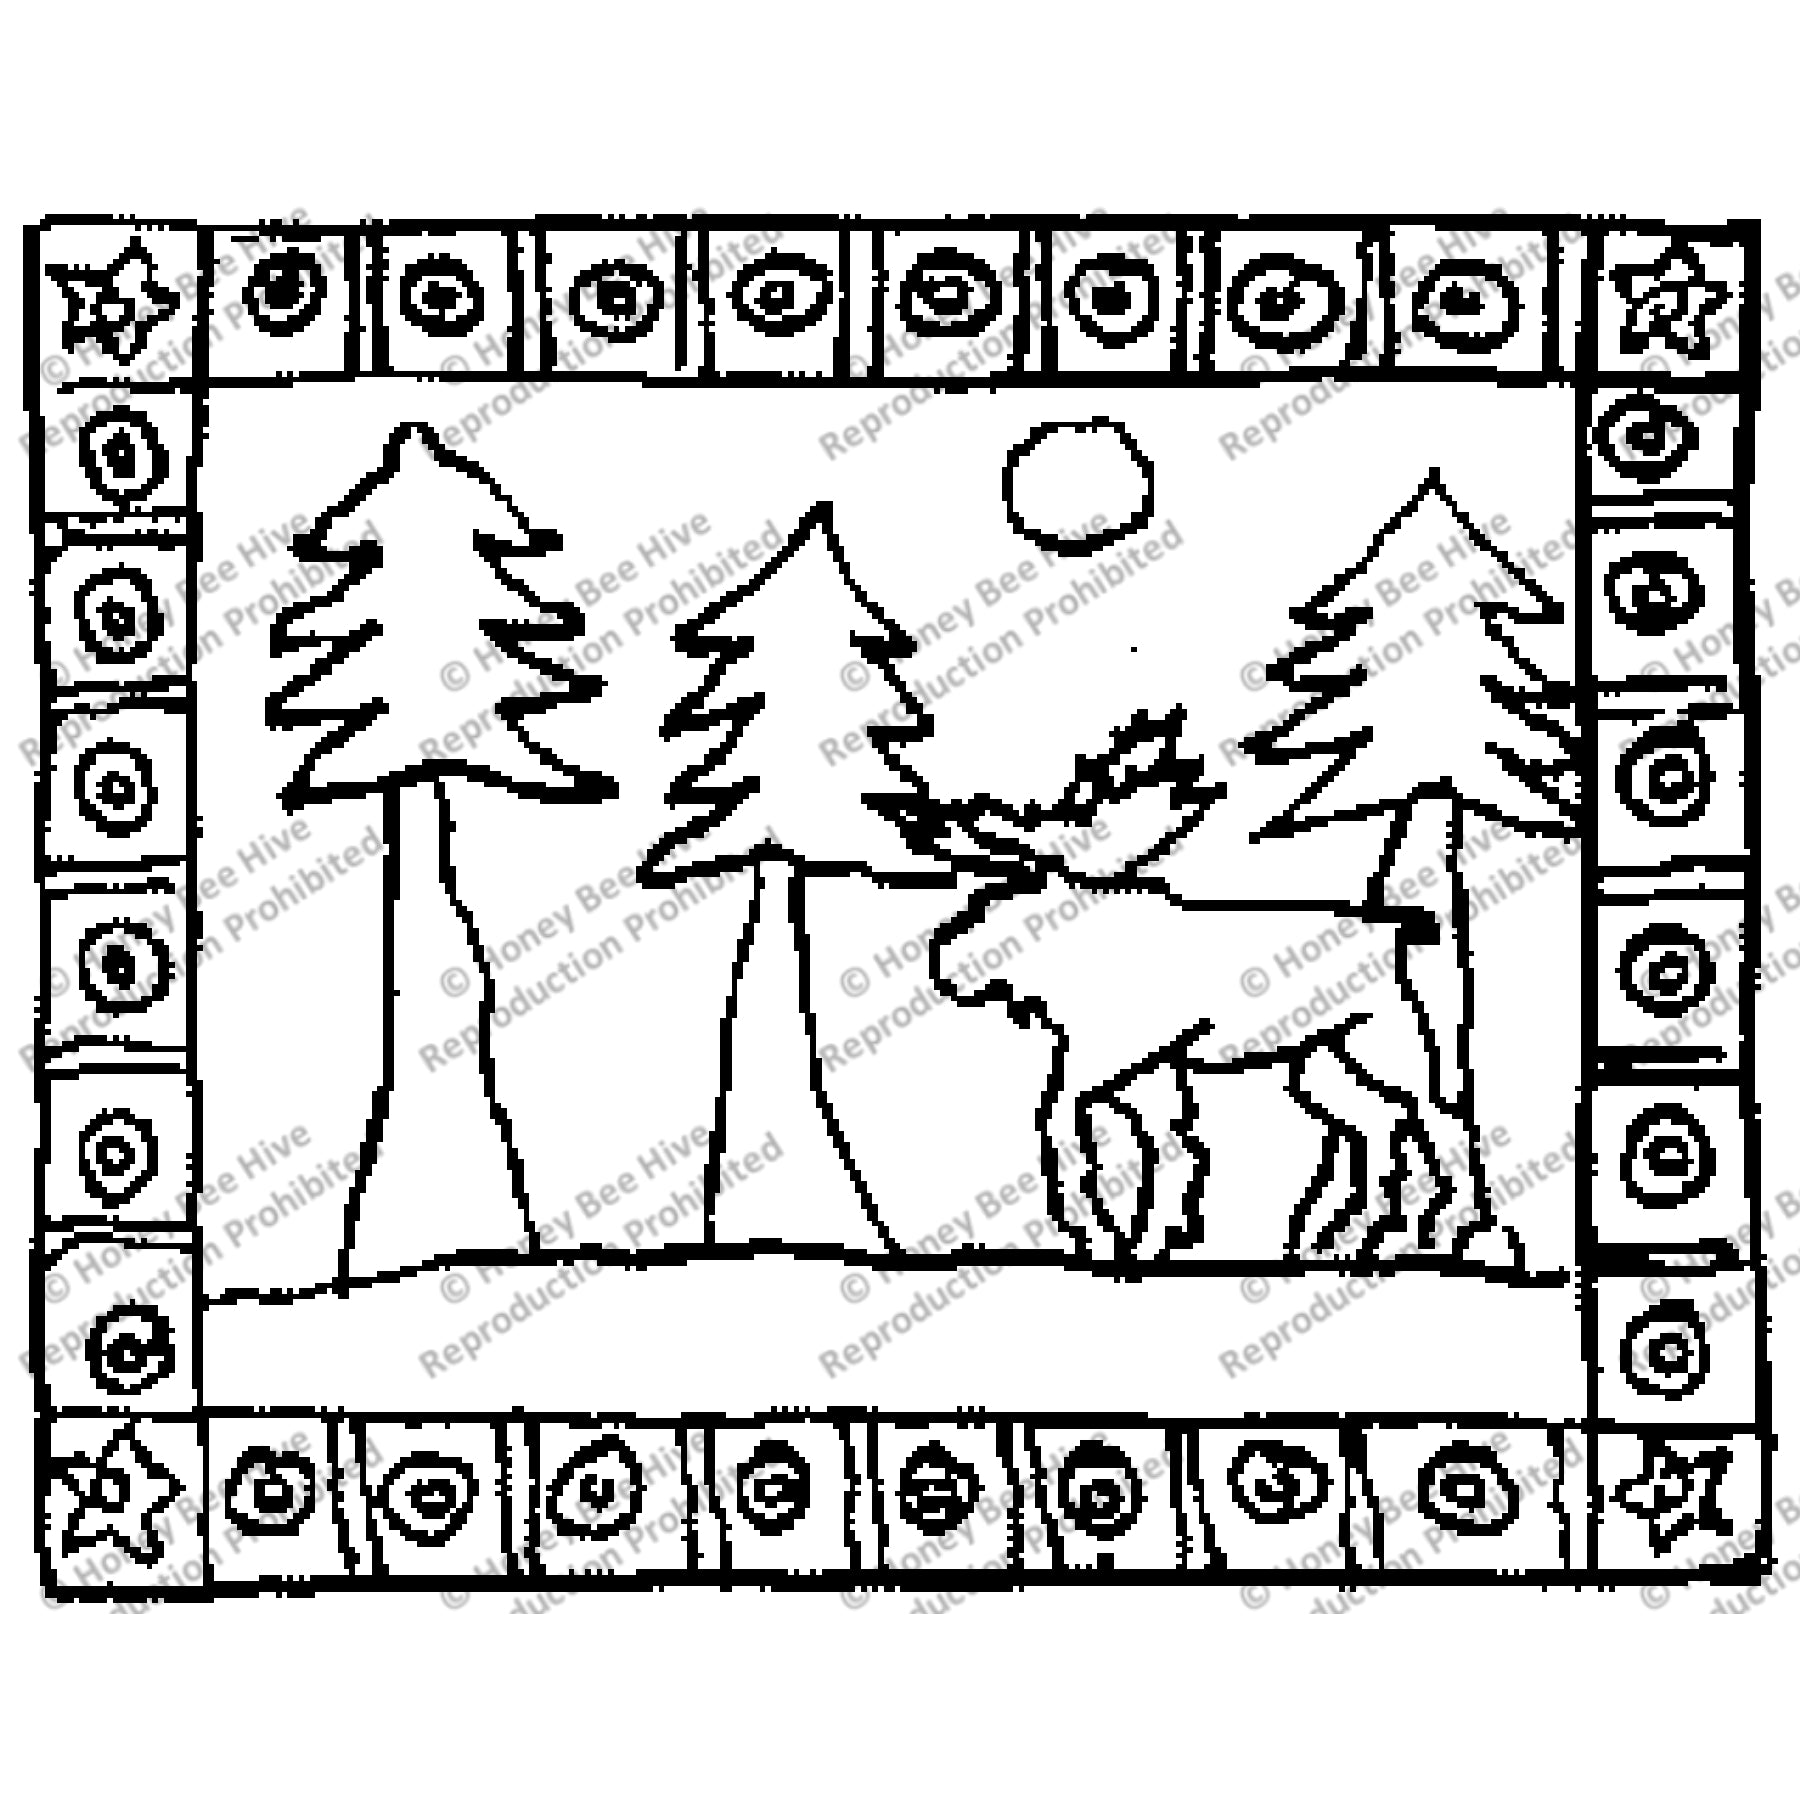 Moose, rug hooking pattern